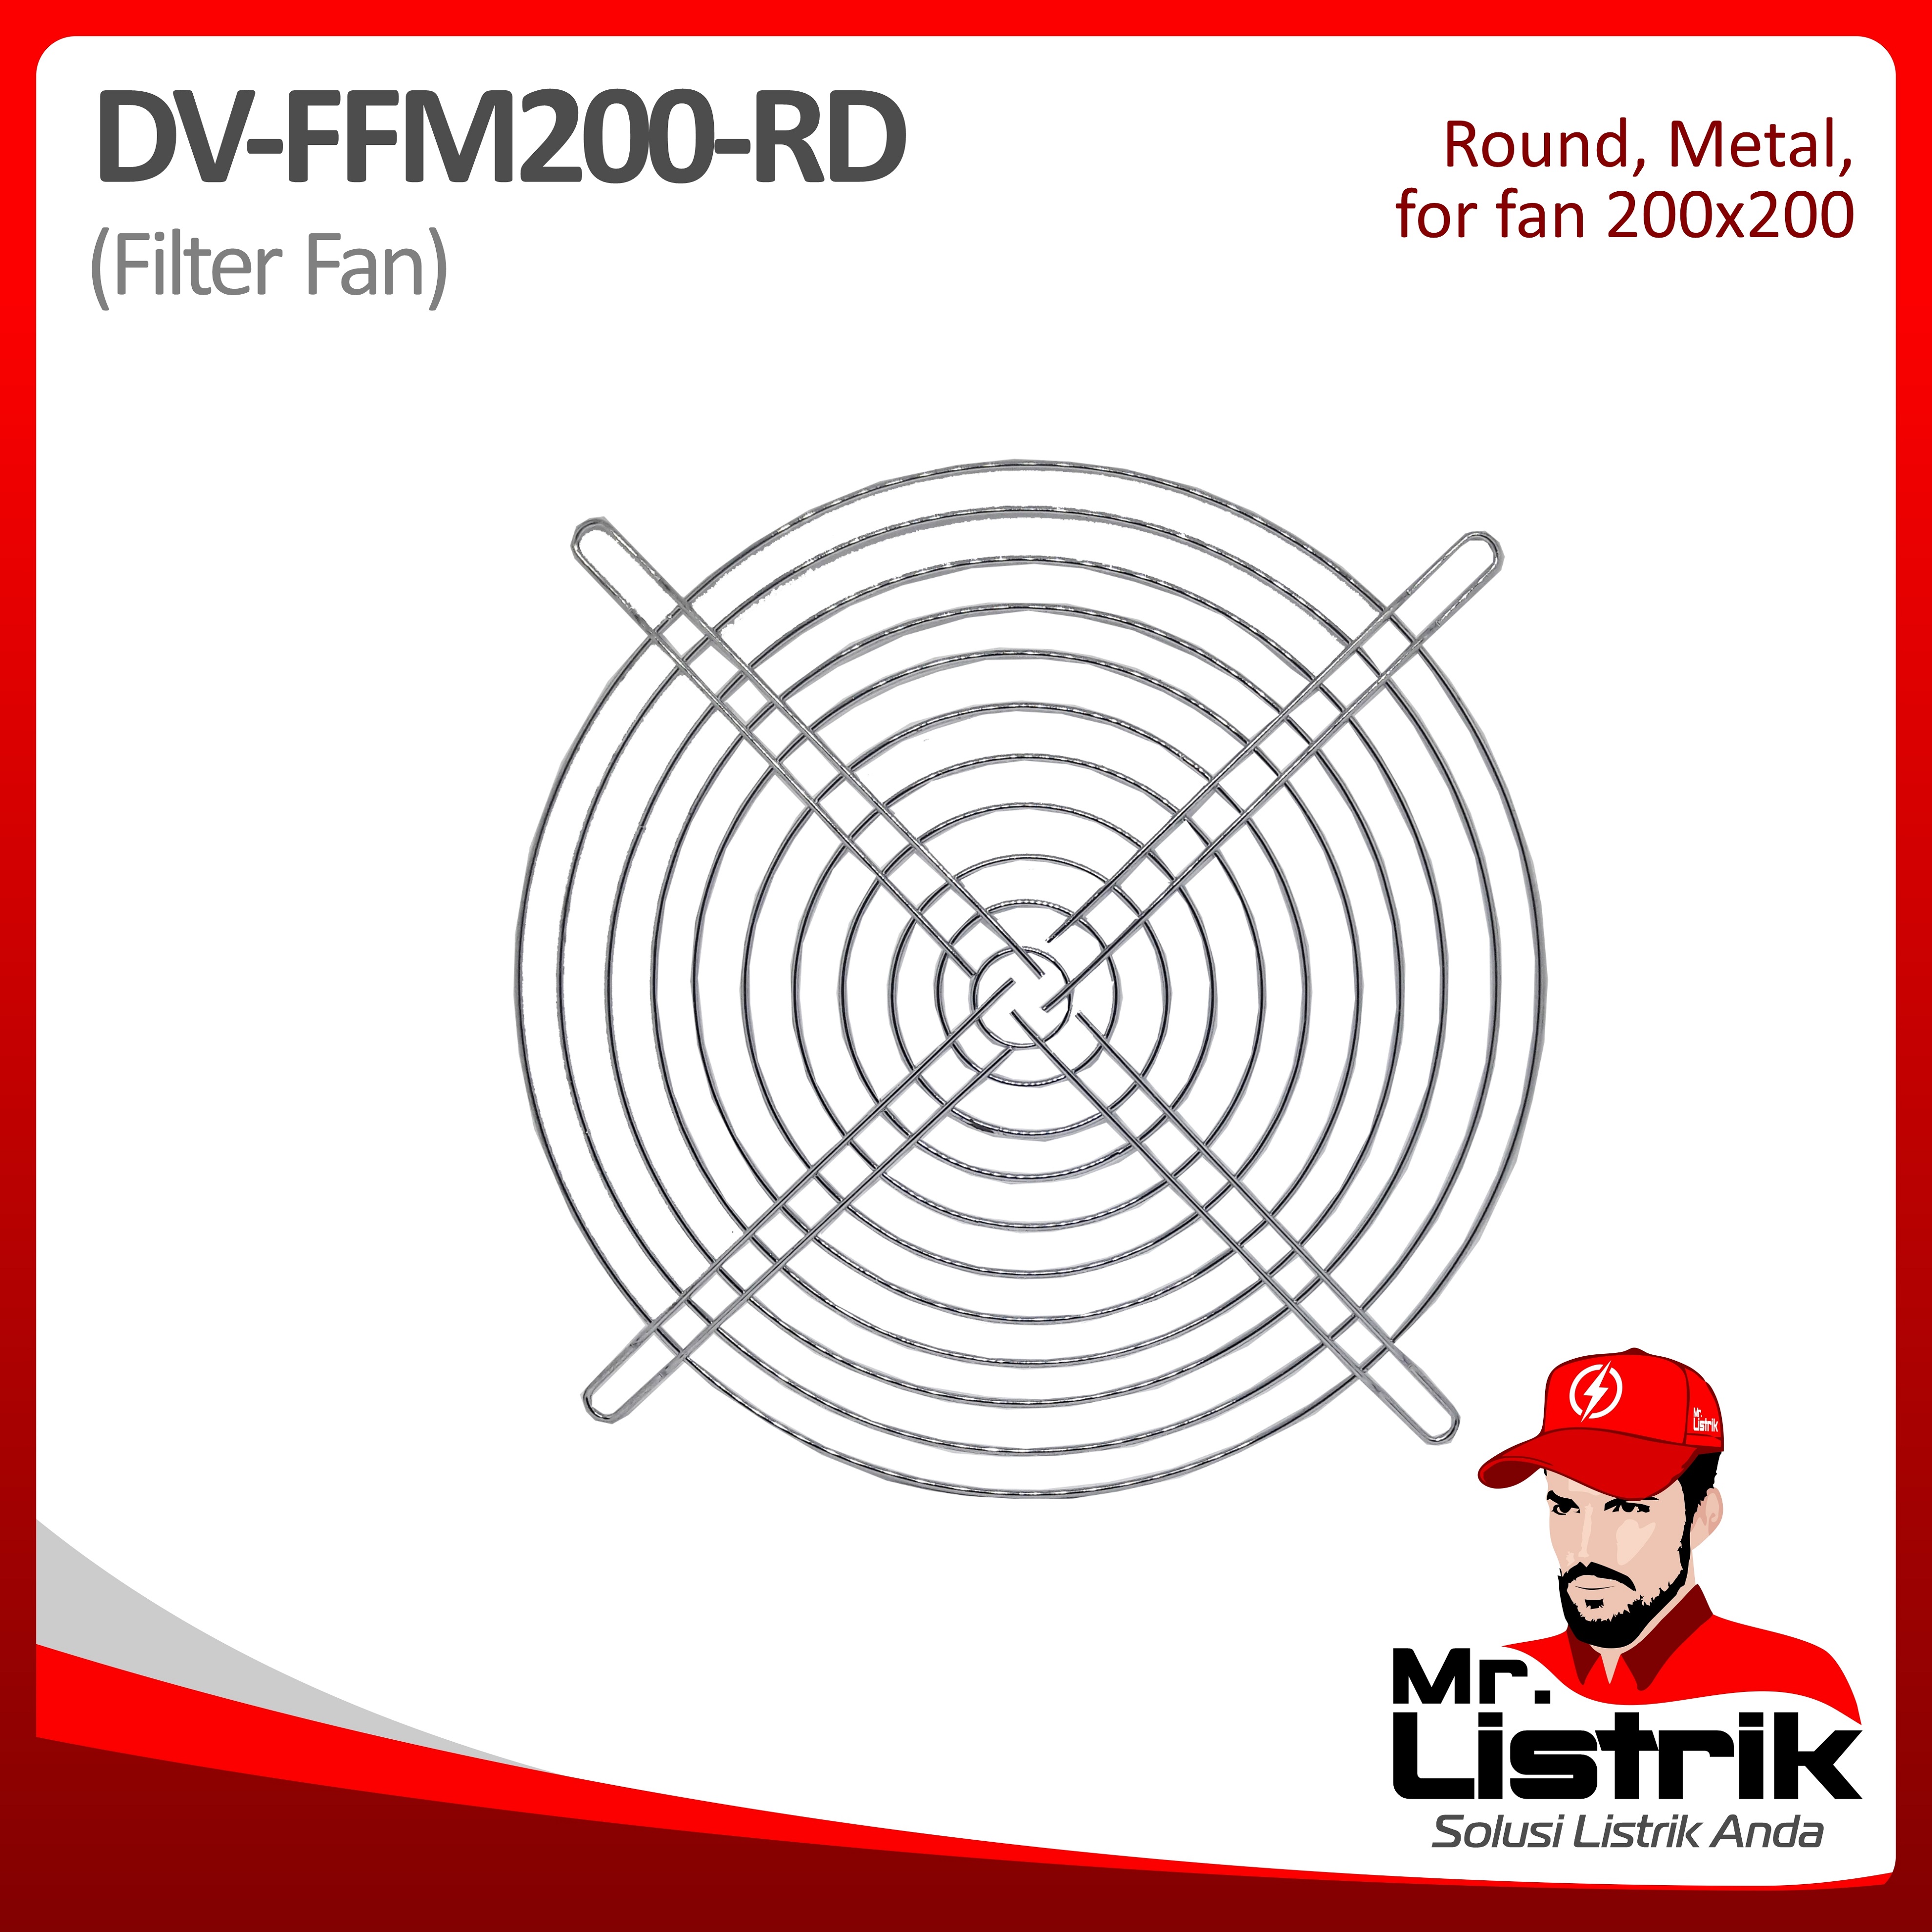 Filter Fan Metal Round For Fan 200x200 DV FFM200-RD